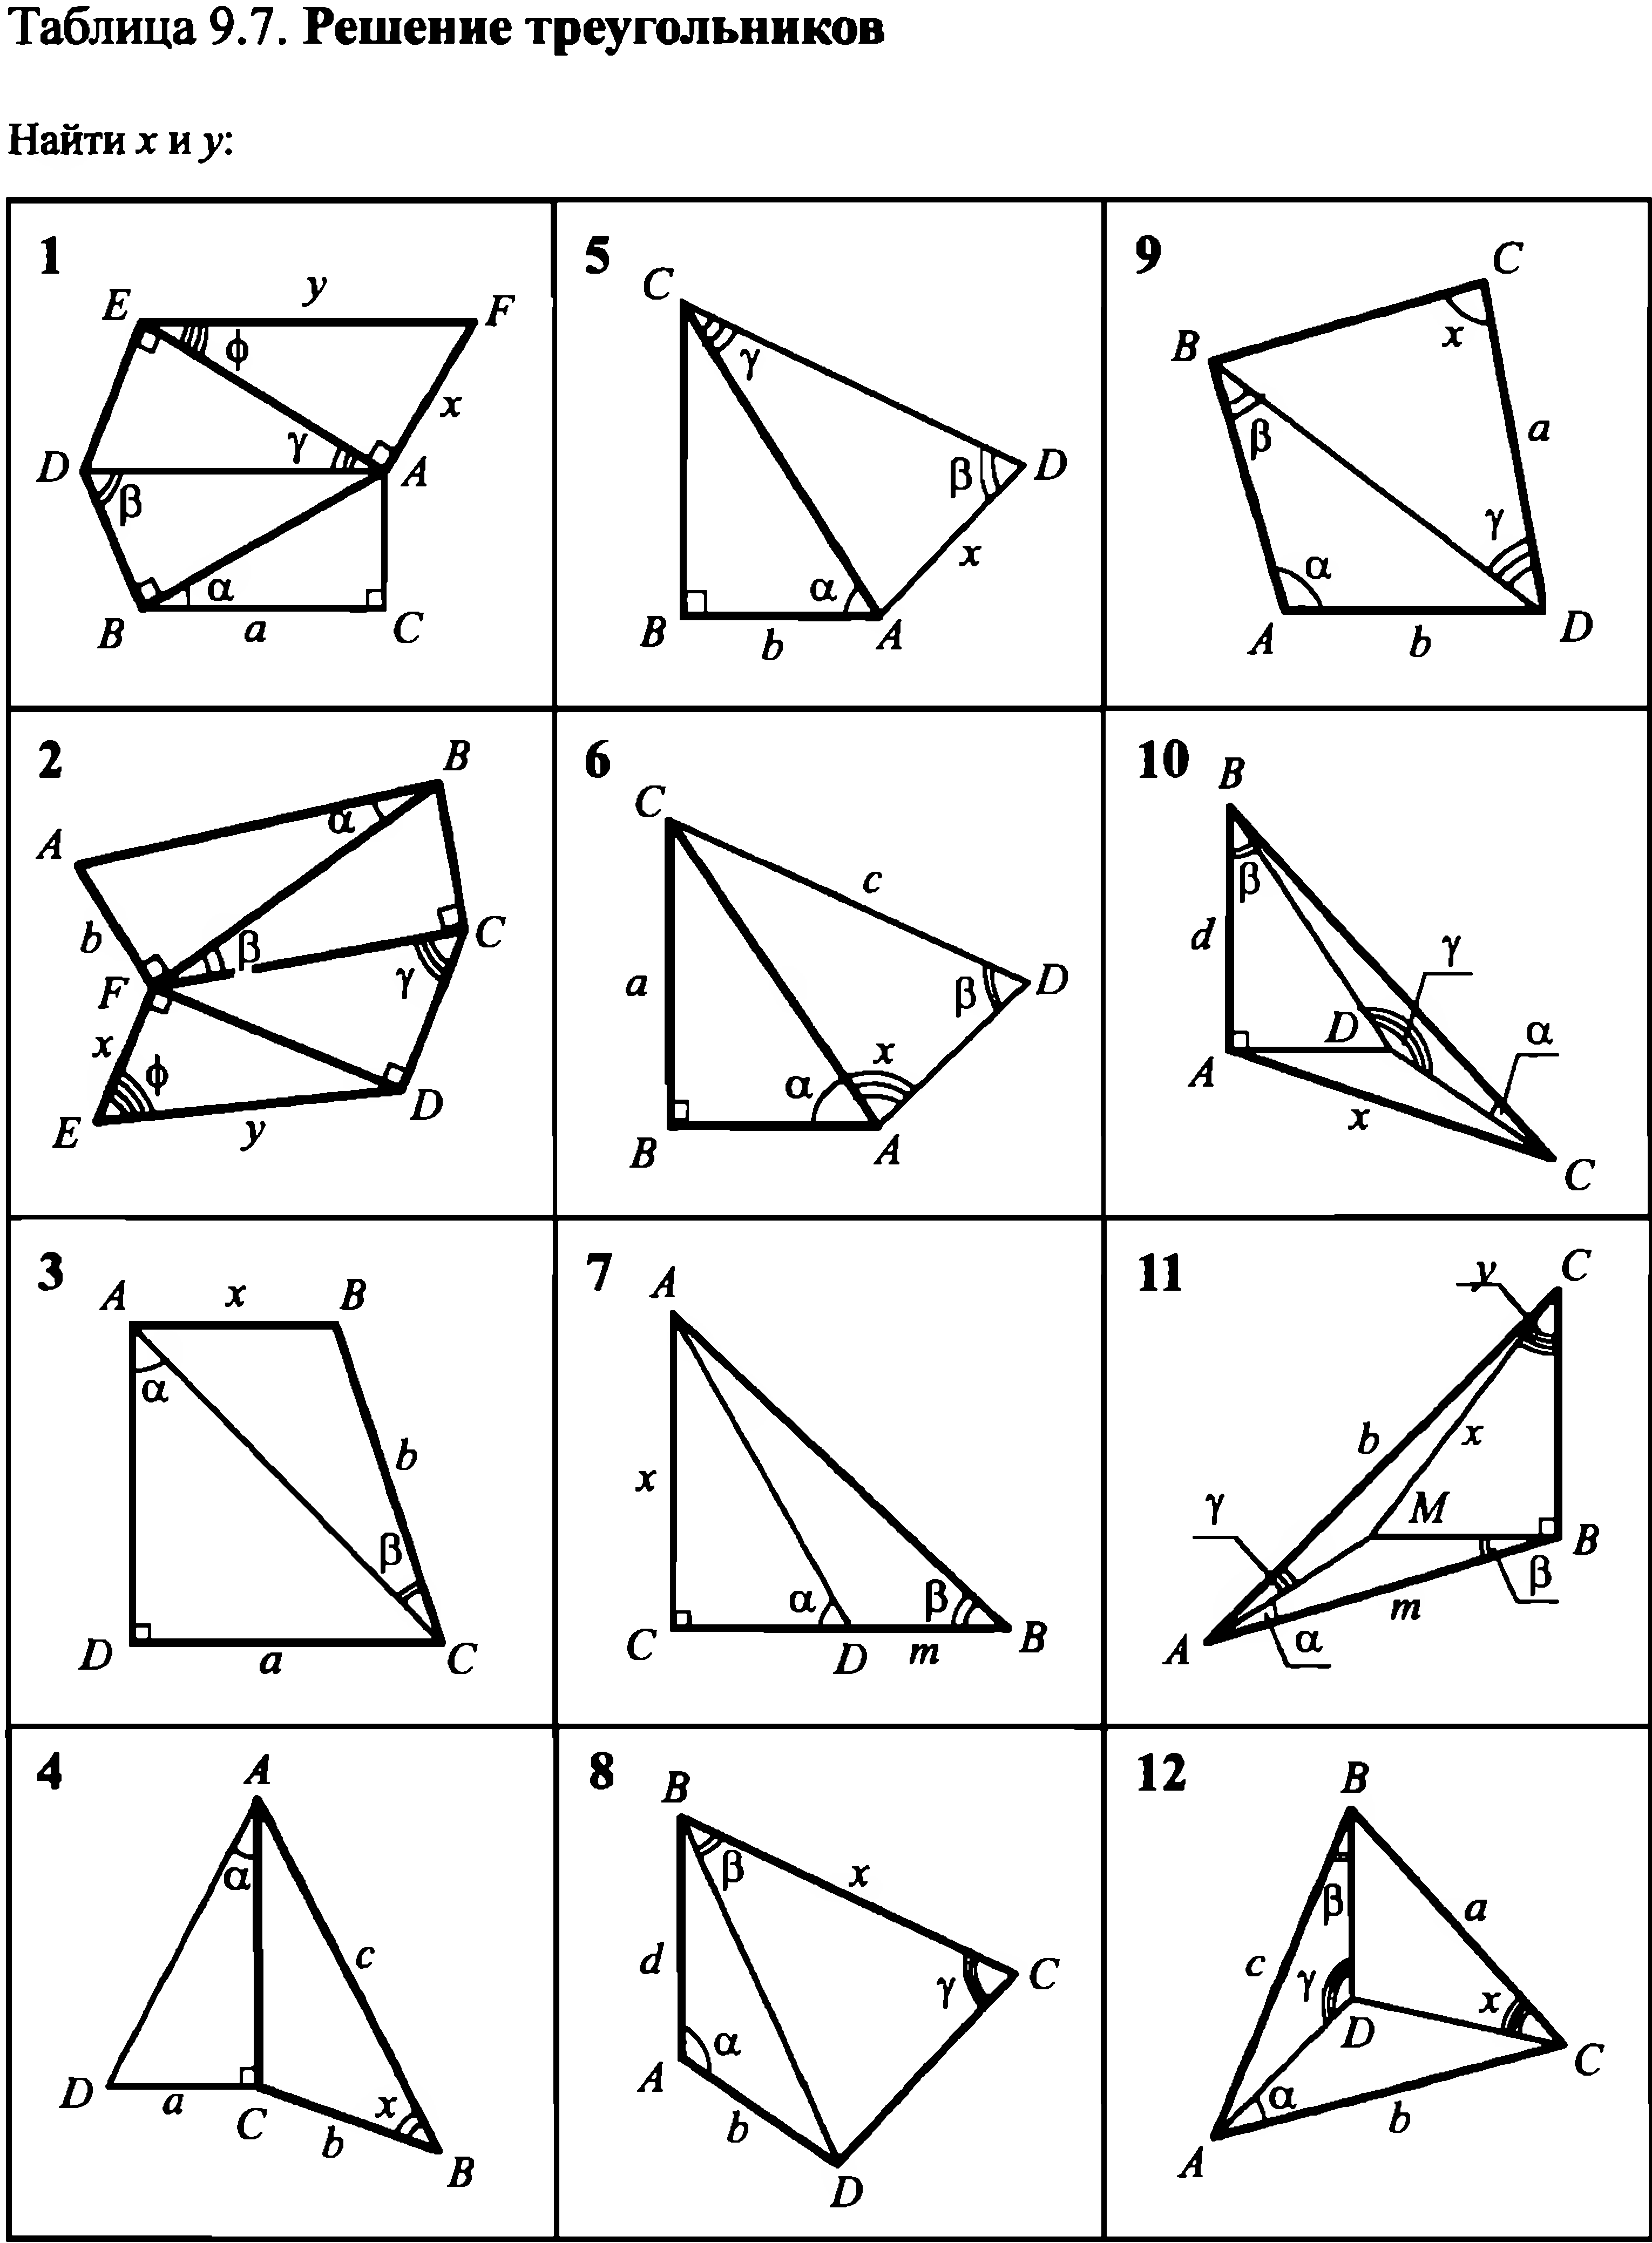 Решение прямоугольных треугольников по готовым чертежам. Задачи на готовых чертежах Рабинович 8. Задачи на готовых чертежах Балаян теорема Пифагора. Задачи на готовых чертежах 8 подобие треугольников. Решение треугольников задачи на готовых чертежах 9 класс.